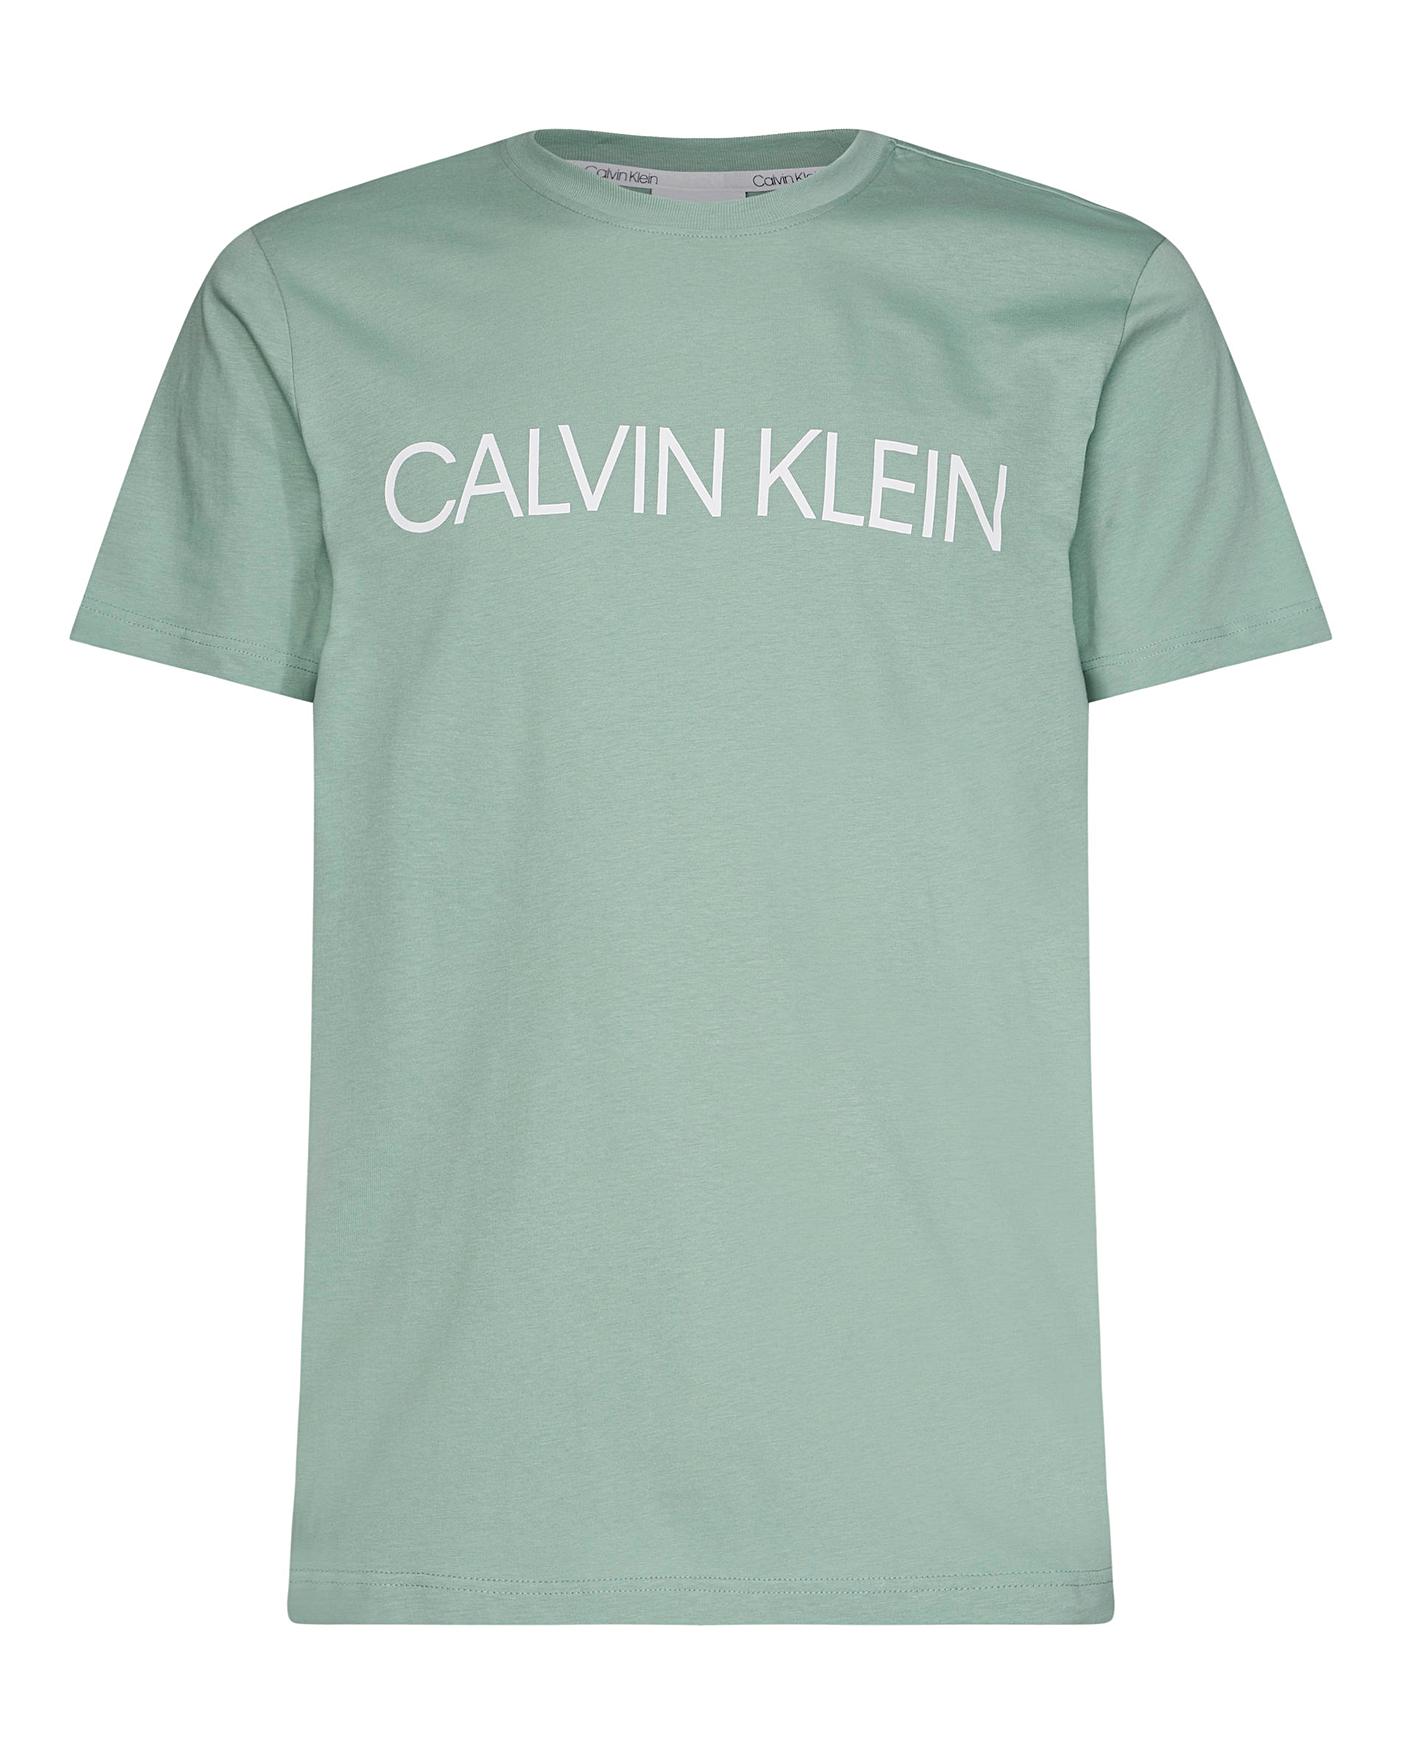 calvin klein green t shirt